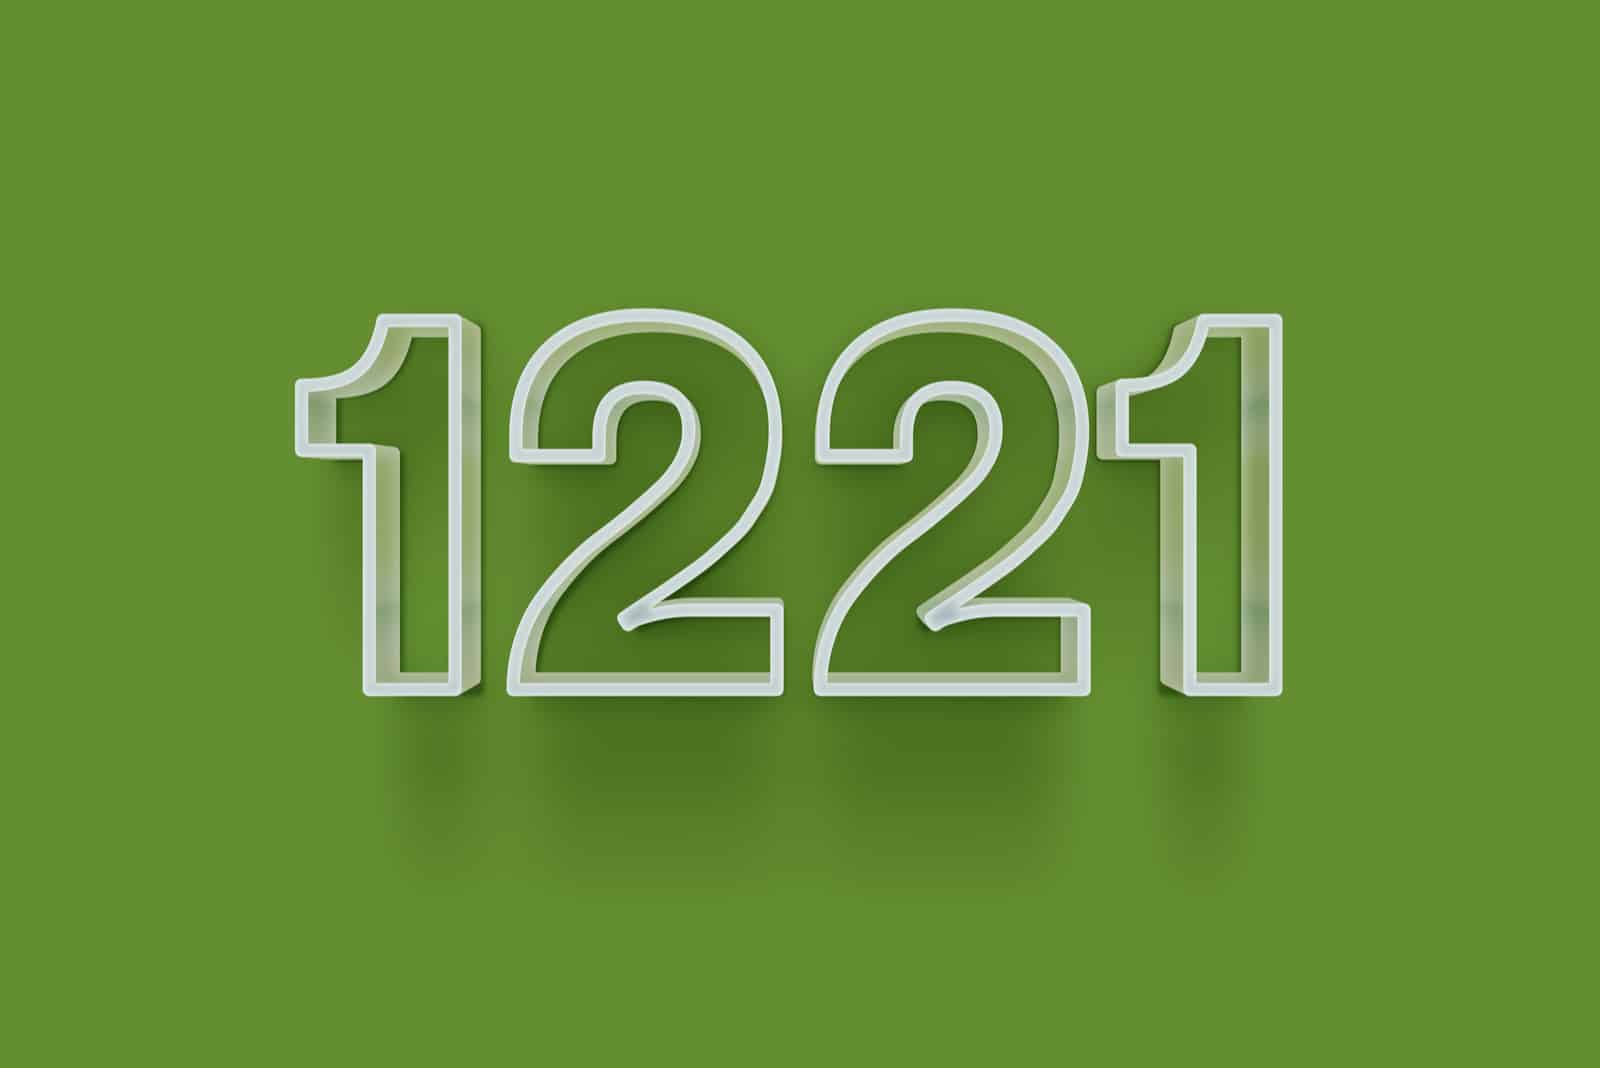 weiße Zahl 1221 auf grüner Fläche